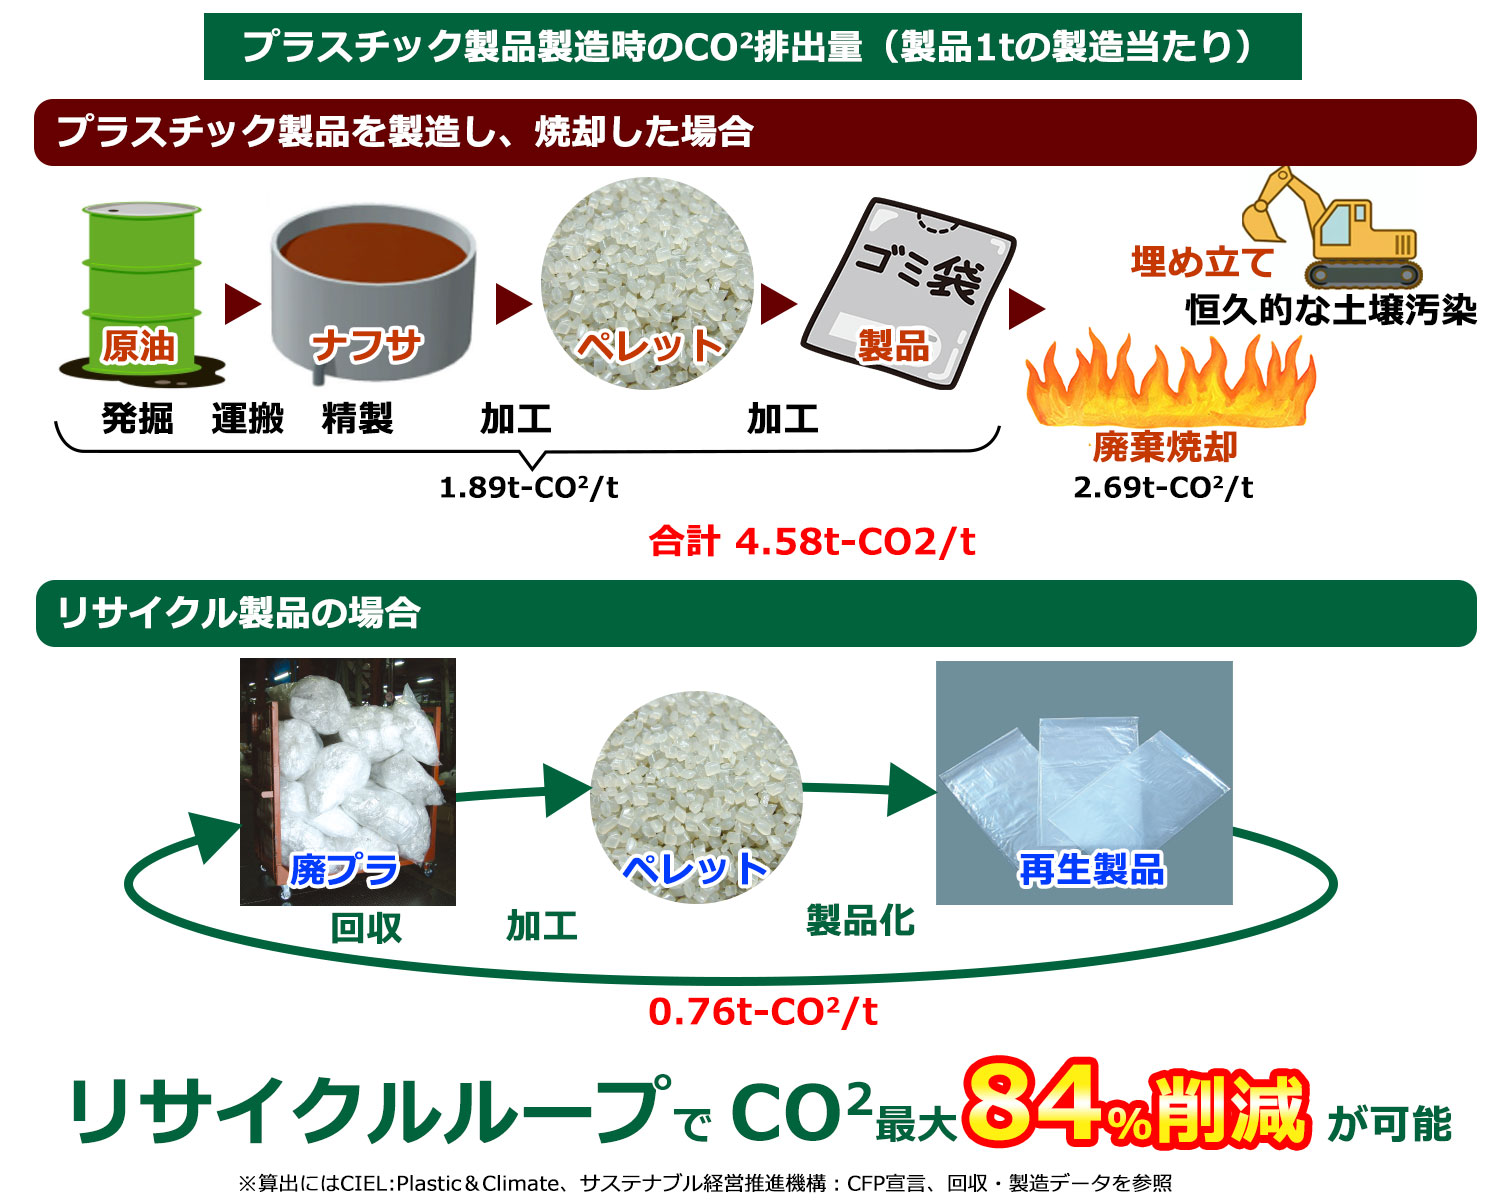 リサイクルループでCO2最大84%削減が可能